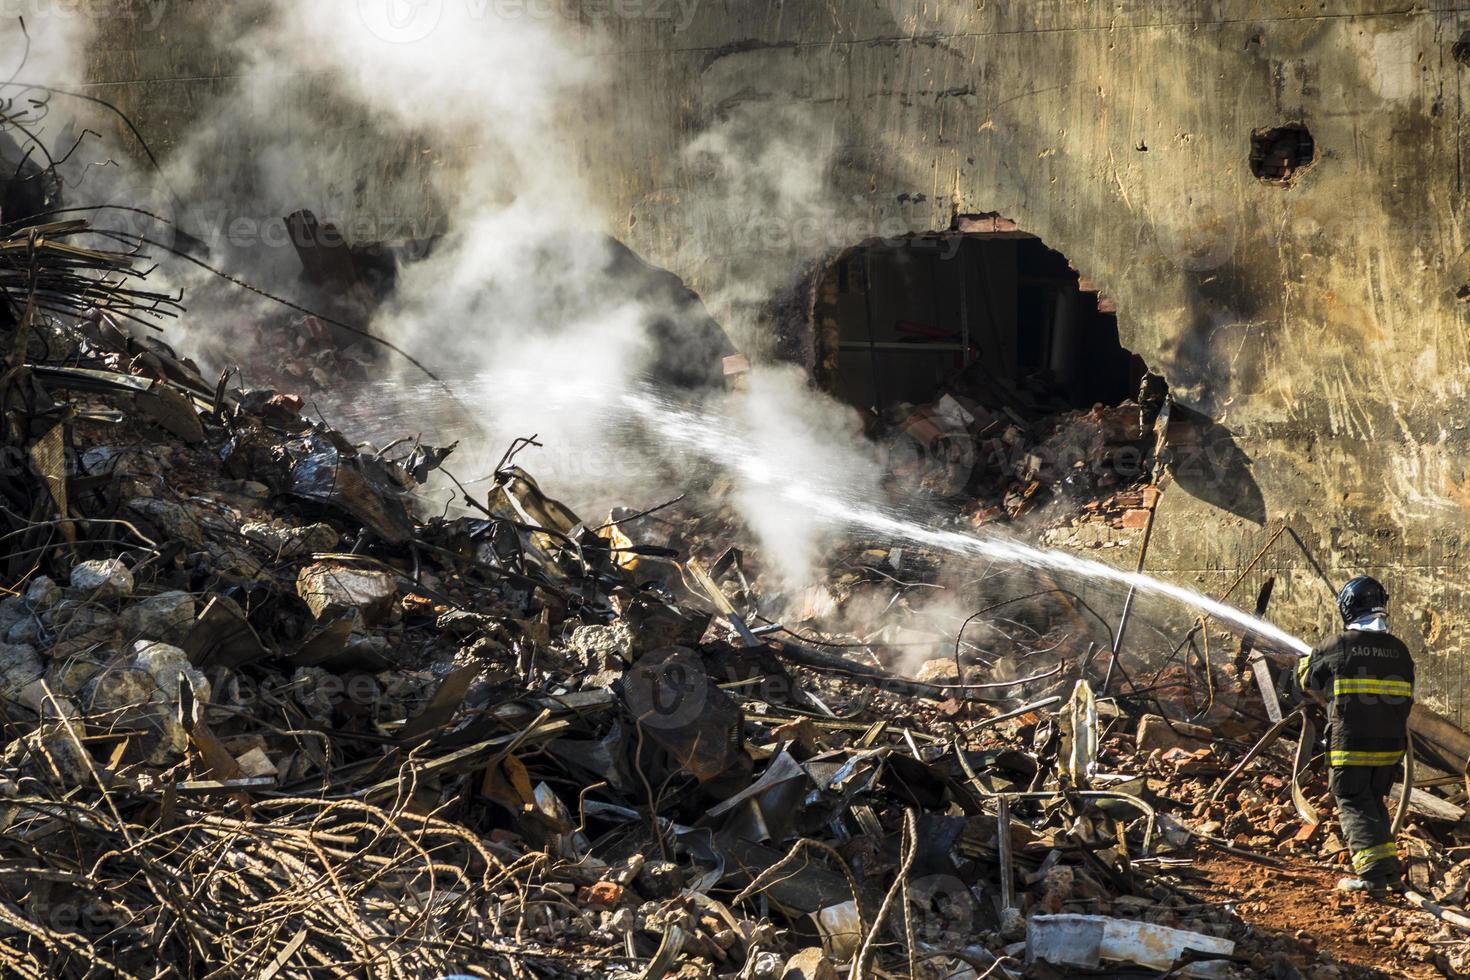 bombeiro brasileiro combate chamas nos escombros onde um prédio de 24 andares desabou após um incêndio no centro de são paulo, foto